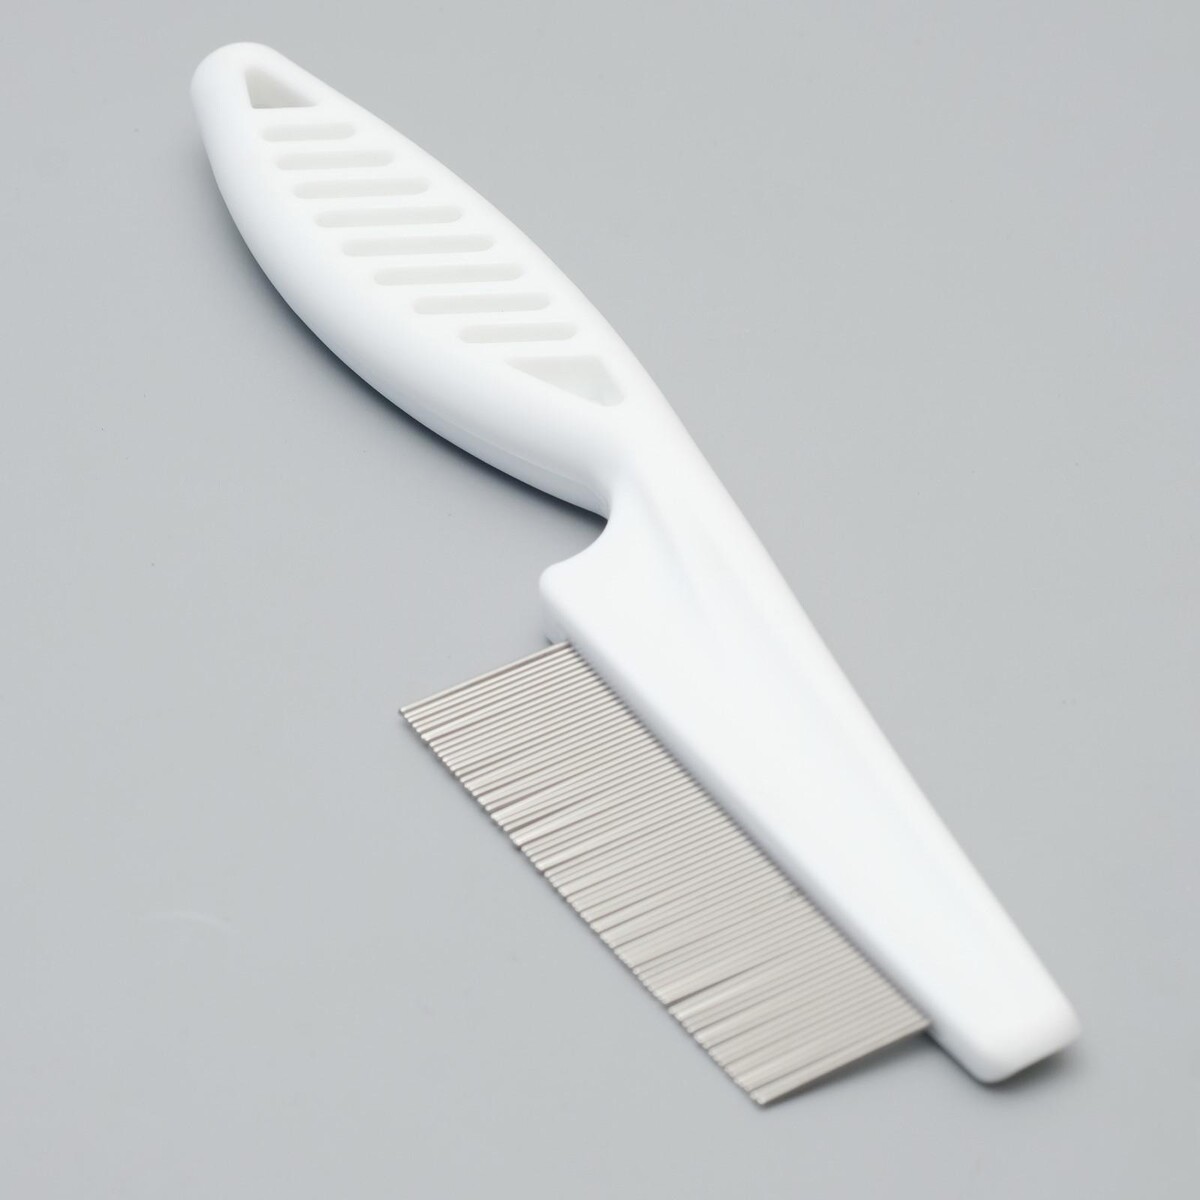 Расческа с частыми зубьями, 18 см, пластиковая ручка, белая расческа наладонник с металлическими зубьями 13 х 8 5 см красная